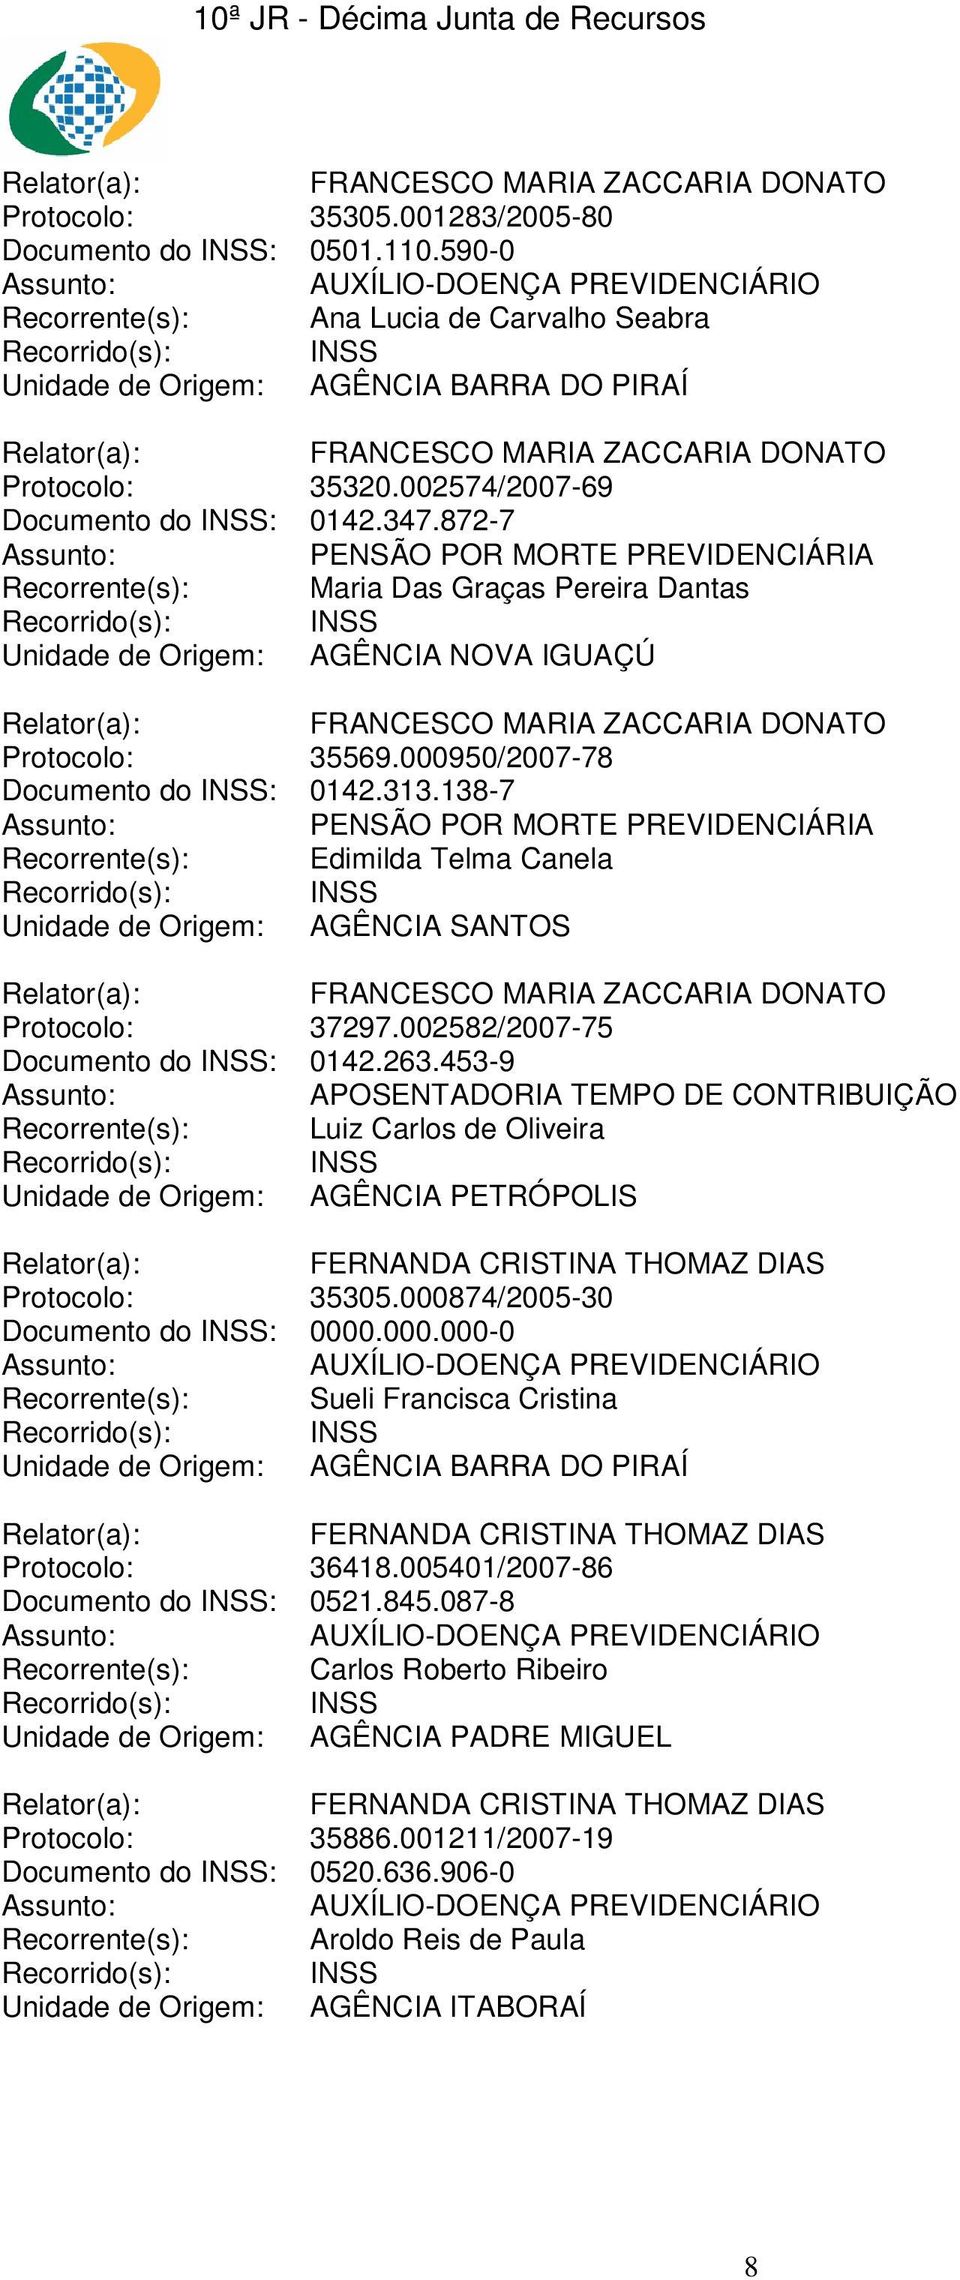 138-7 Recorrente(s): Edimilda Telma Canela Unidade de Origem: AGÊNCIA SANTOS Protocolo: 37297.002582/2007-75 Documento do INSS: 0142.263.453-9 Recorrente(s): Luiz Carlos de Oliveira Protocolo: 35305.